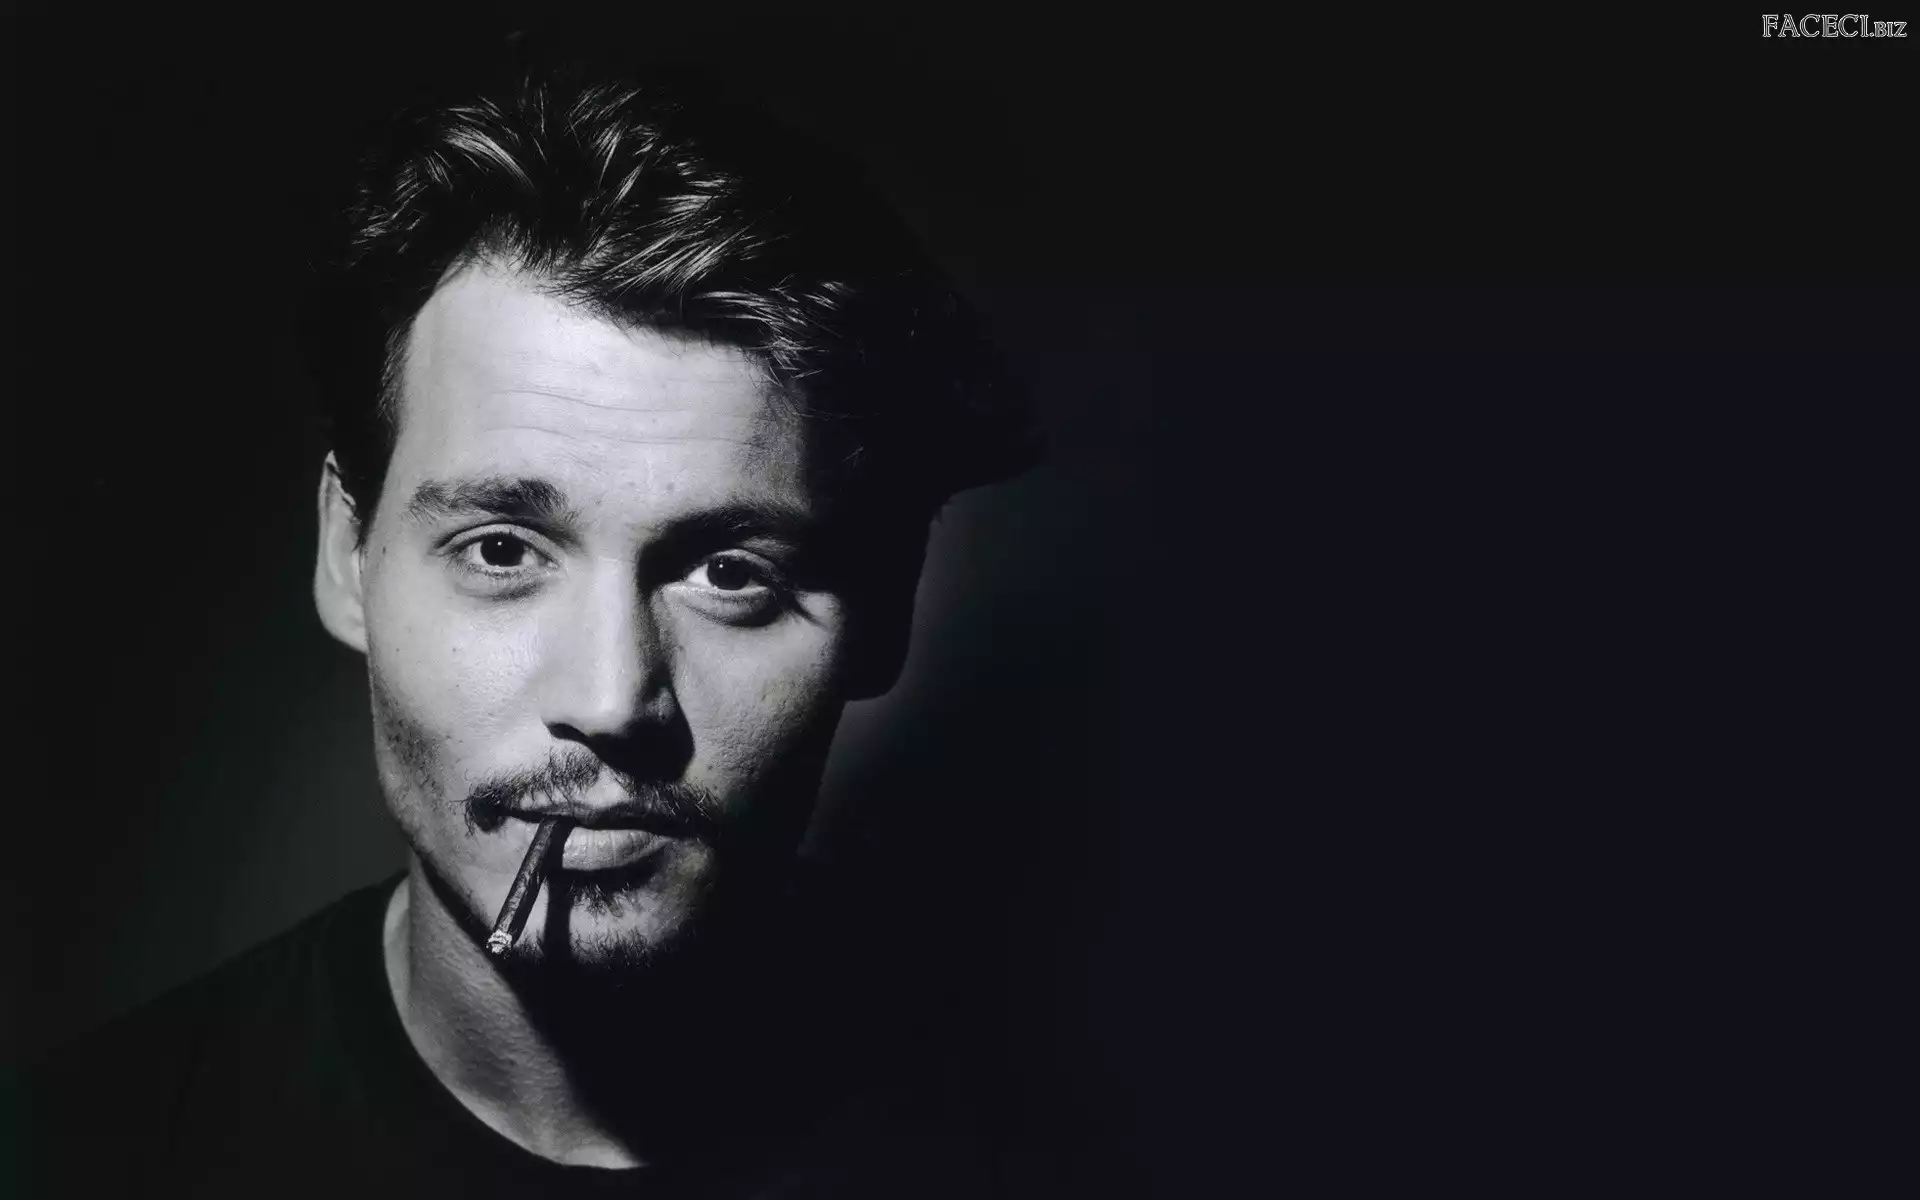 Papieros, Aktor, Johnny Depp